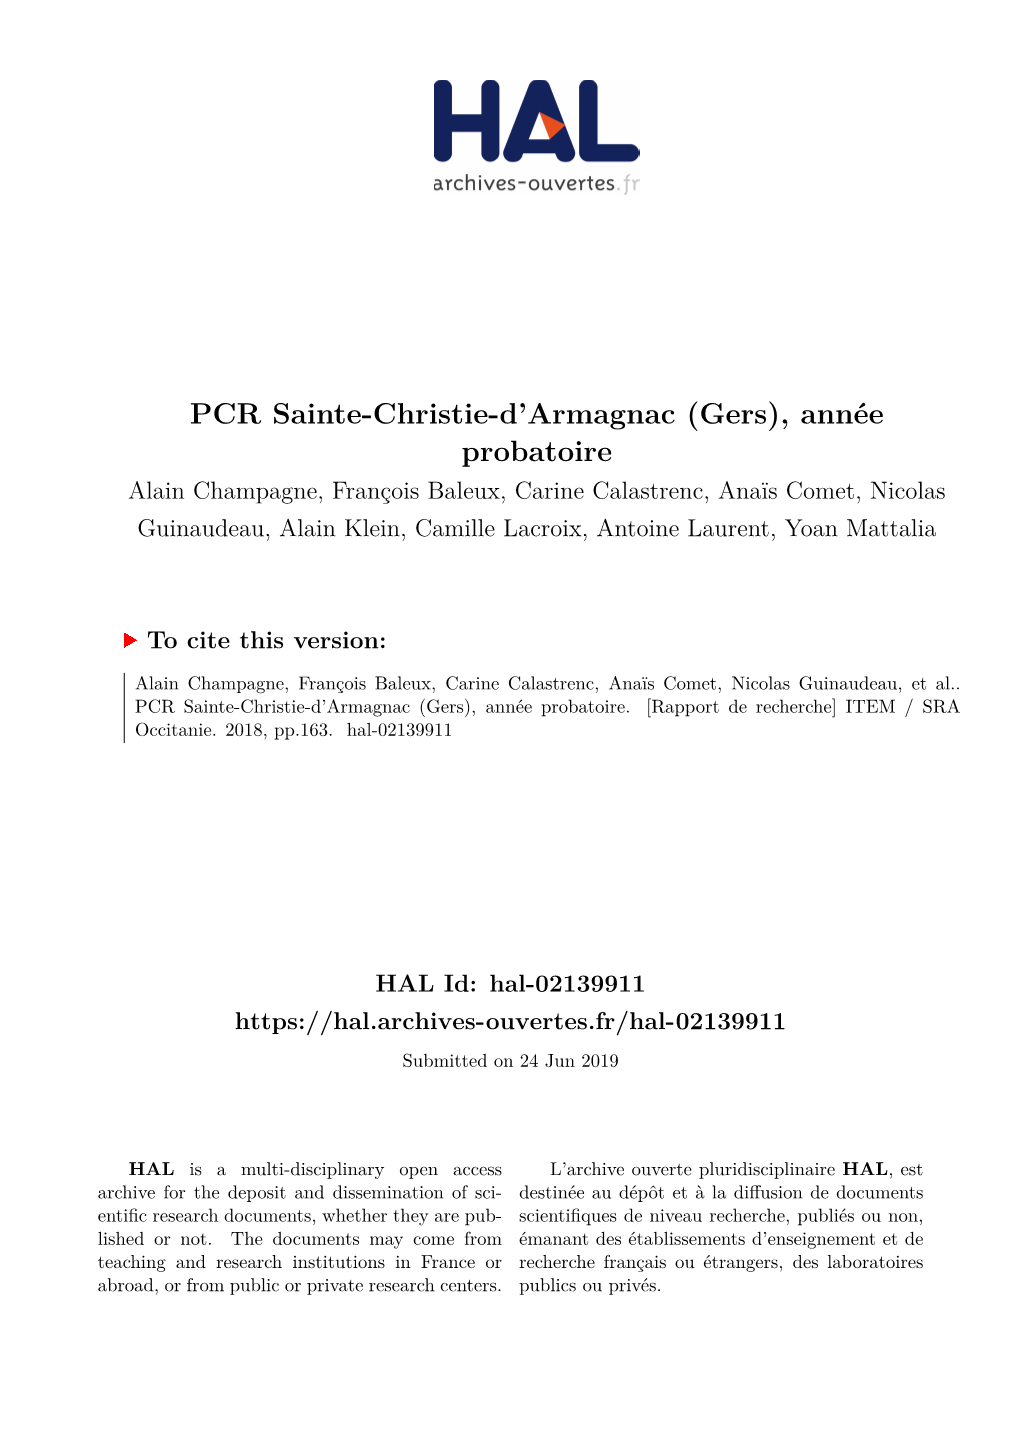 PCR Sainte-Christie-D'armagnac (Gers)